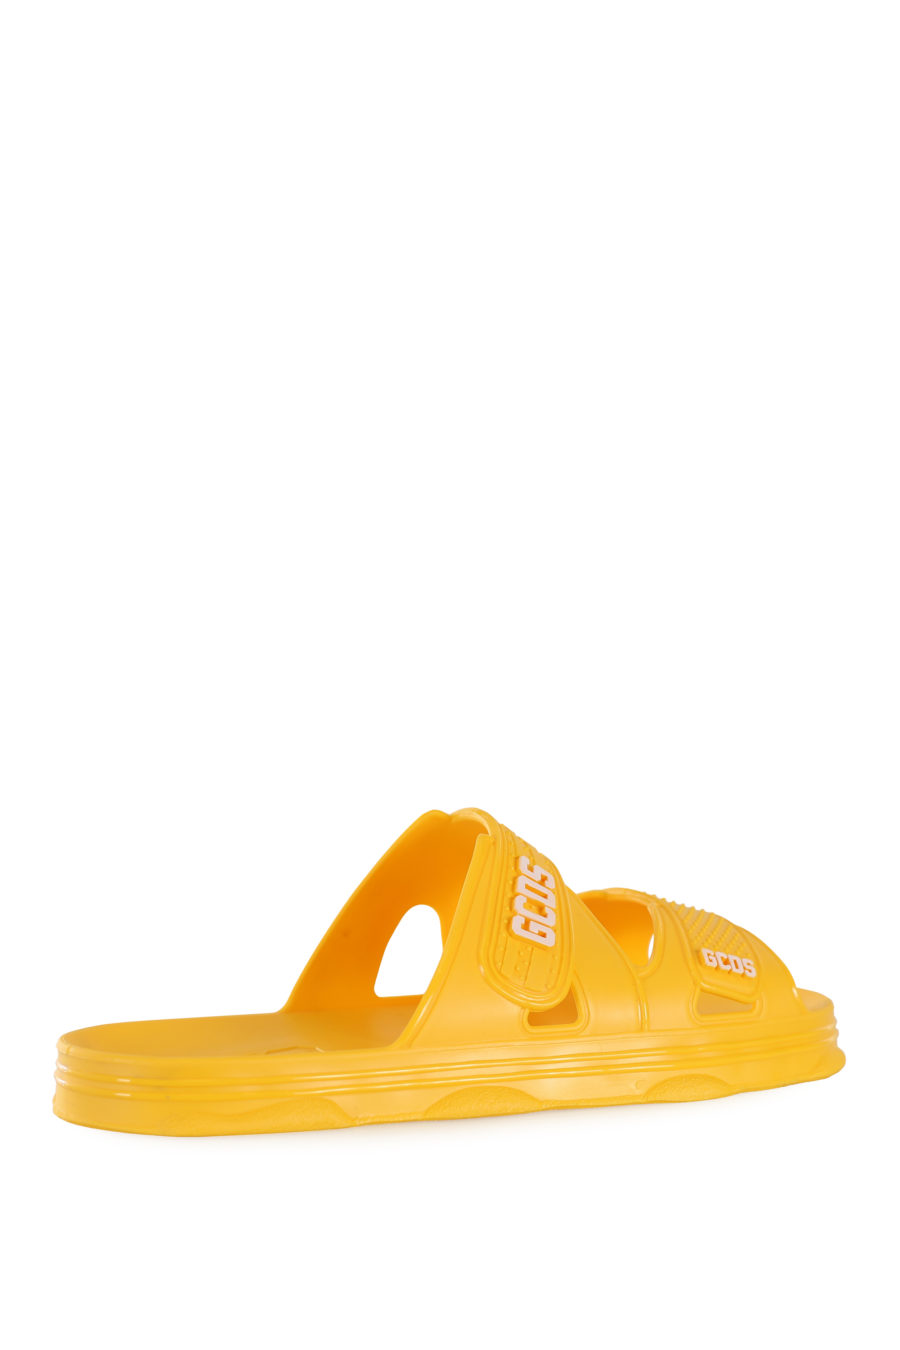 Chanclas amarillas de goma con logo blanco - IMG 1685